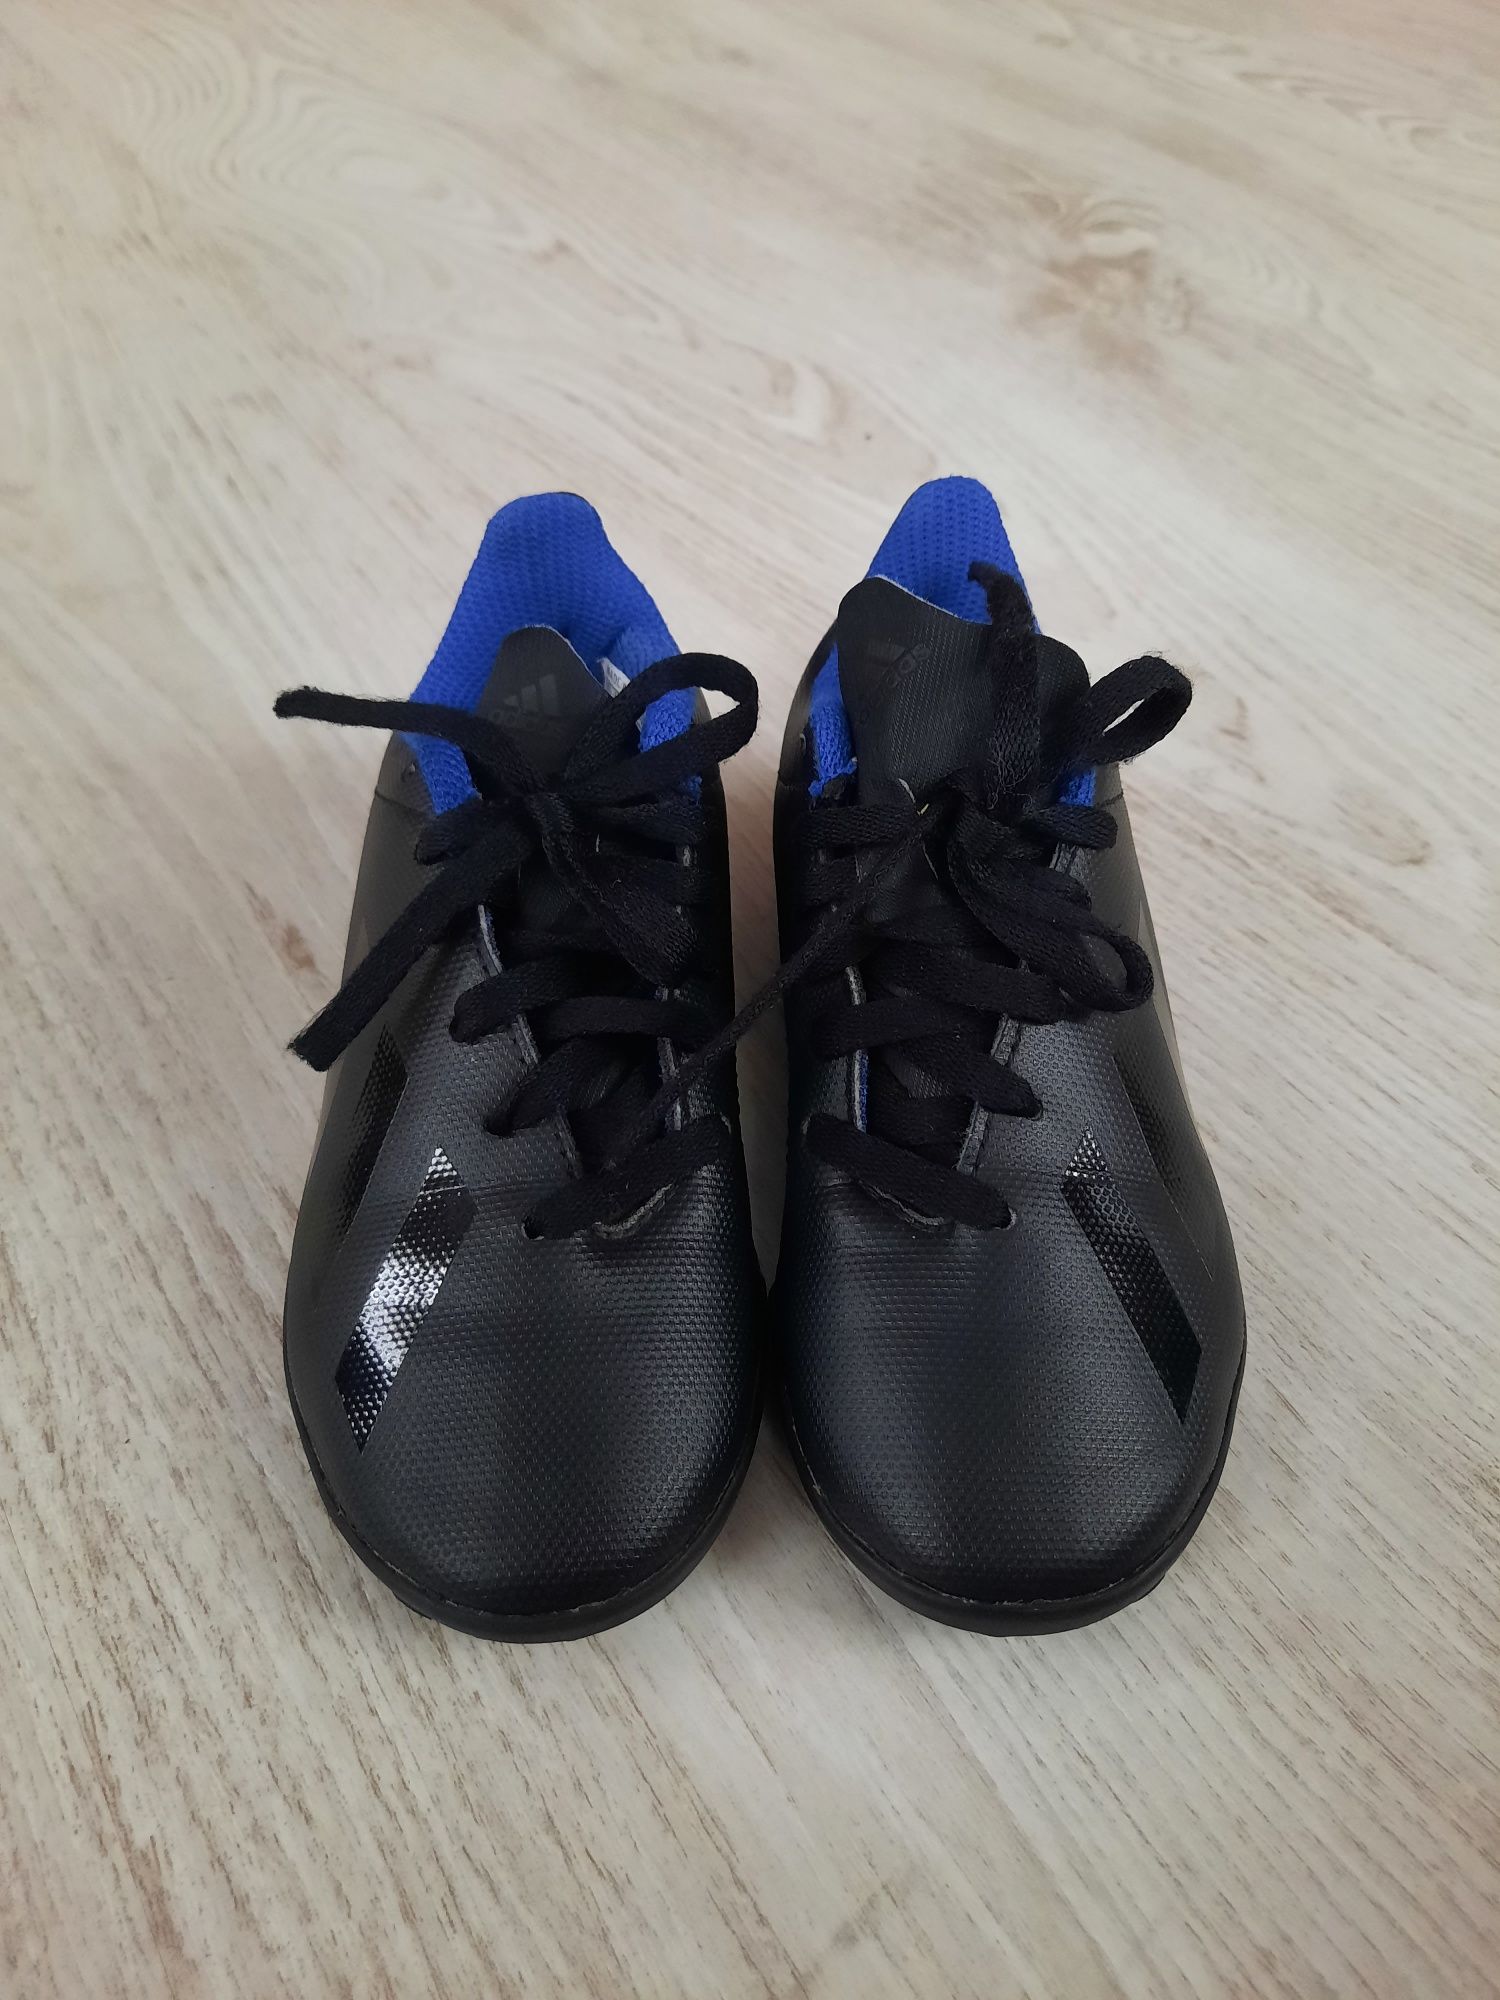 Сороконожки Adidas футзалки кроссовки кросівки черевики 17.5см р.28-27